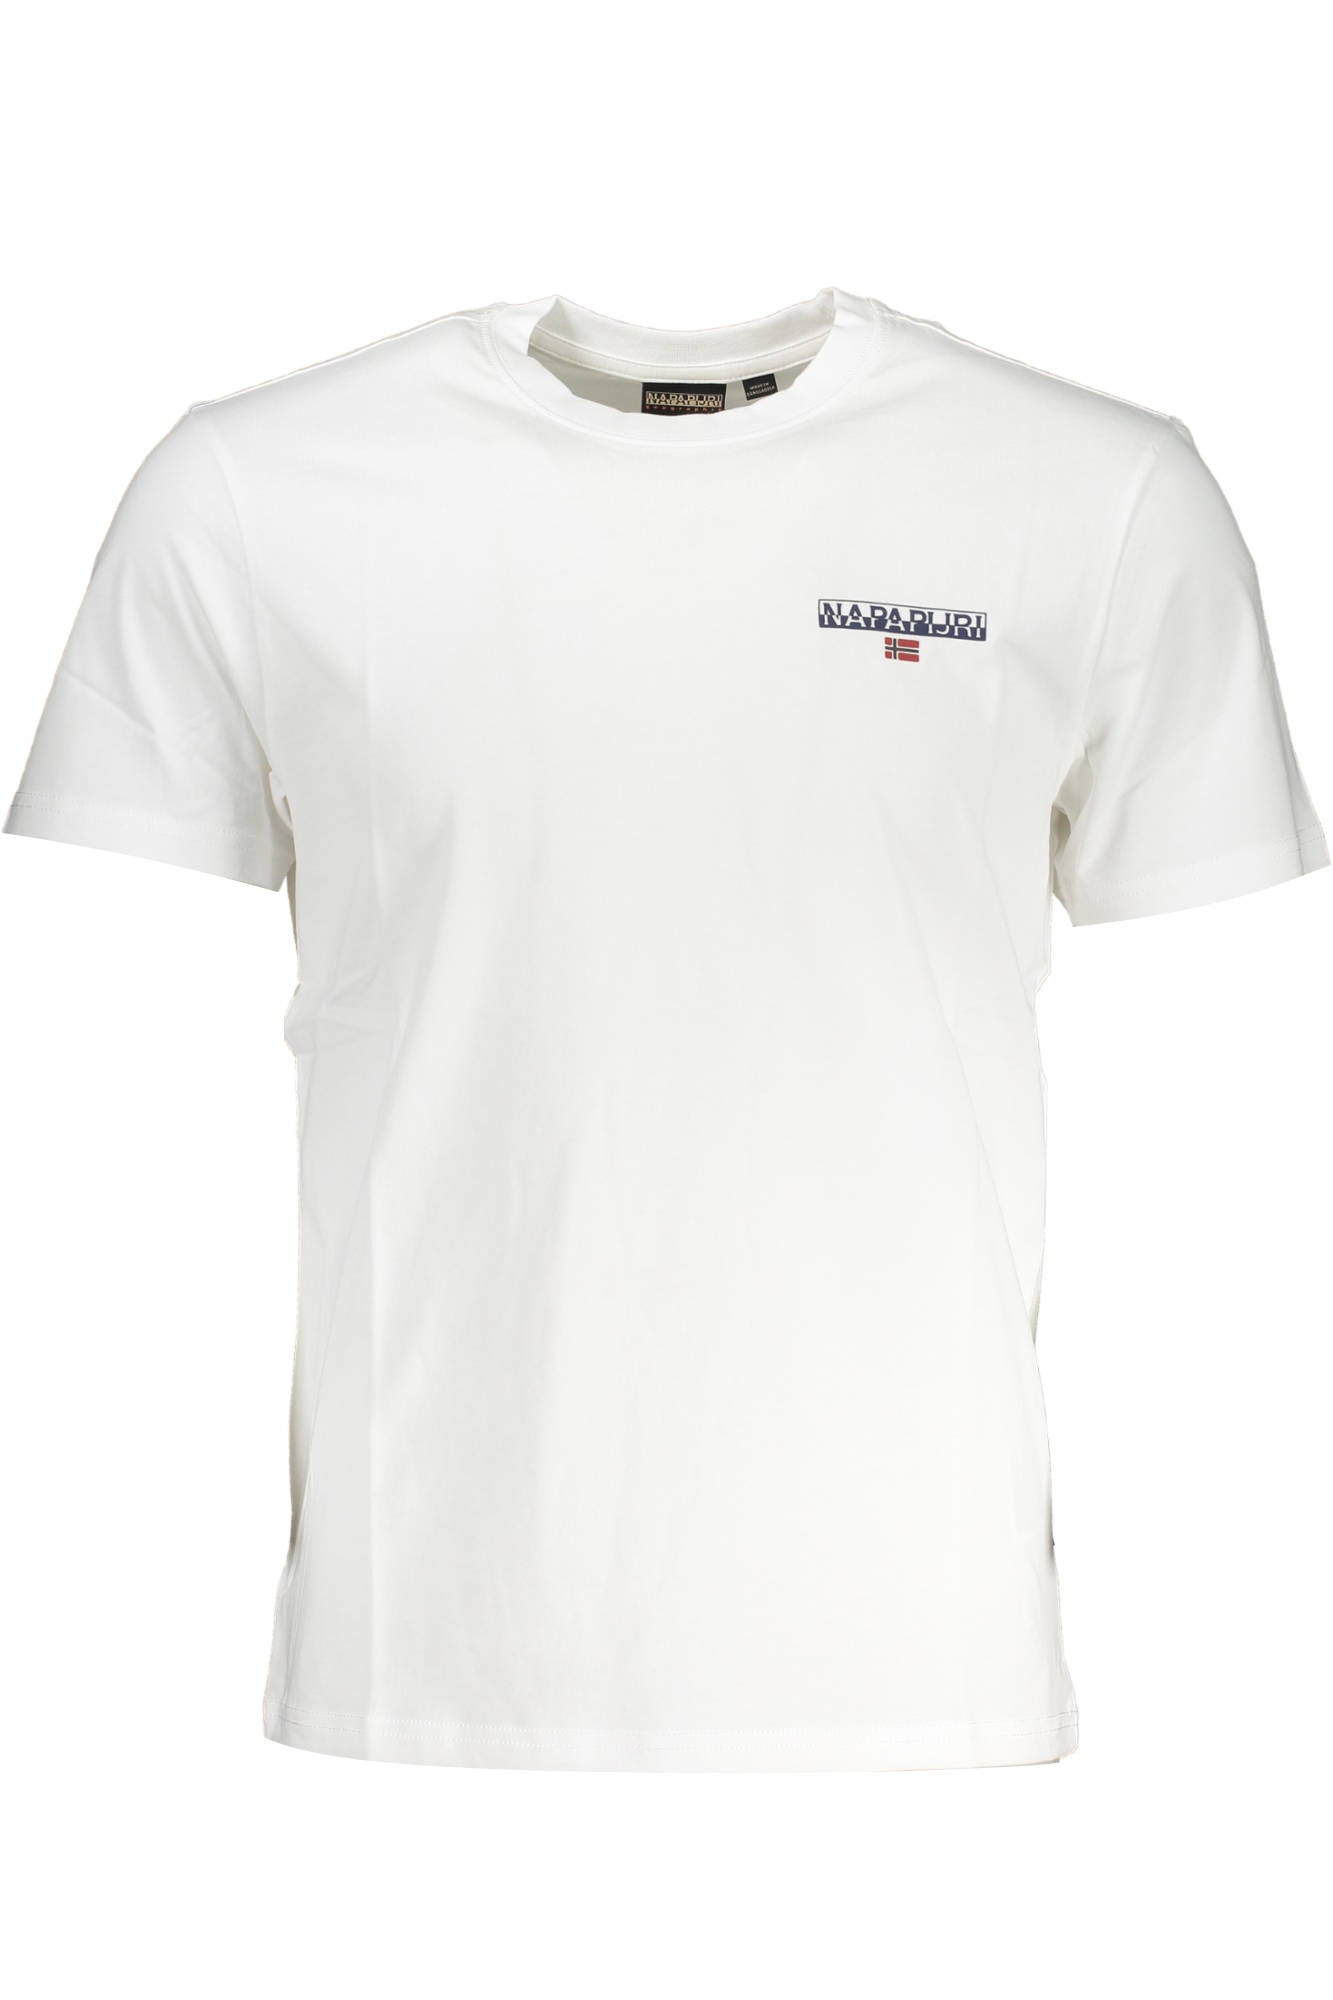 Napapijri White Cotton T-Shirt - Fizigo